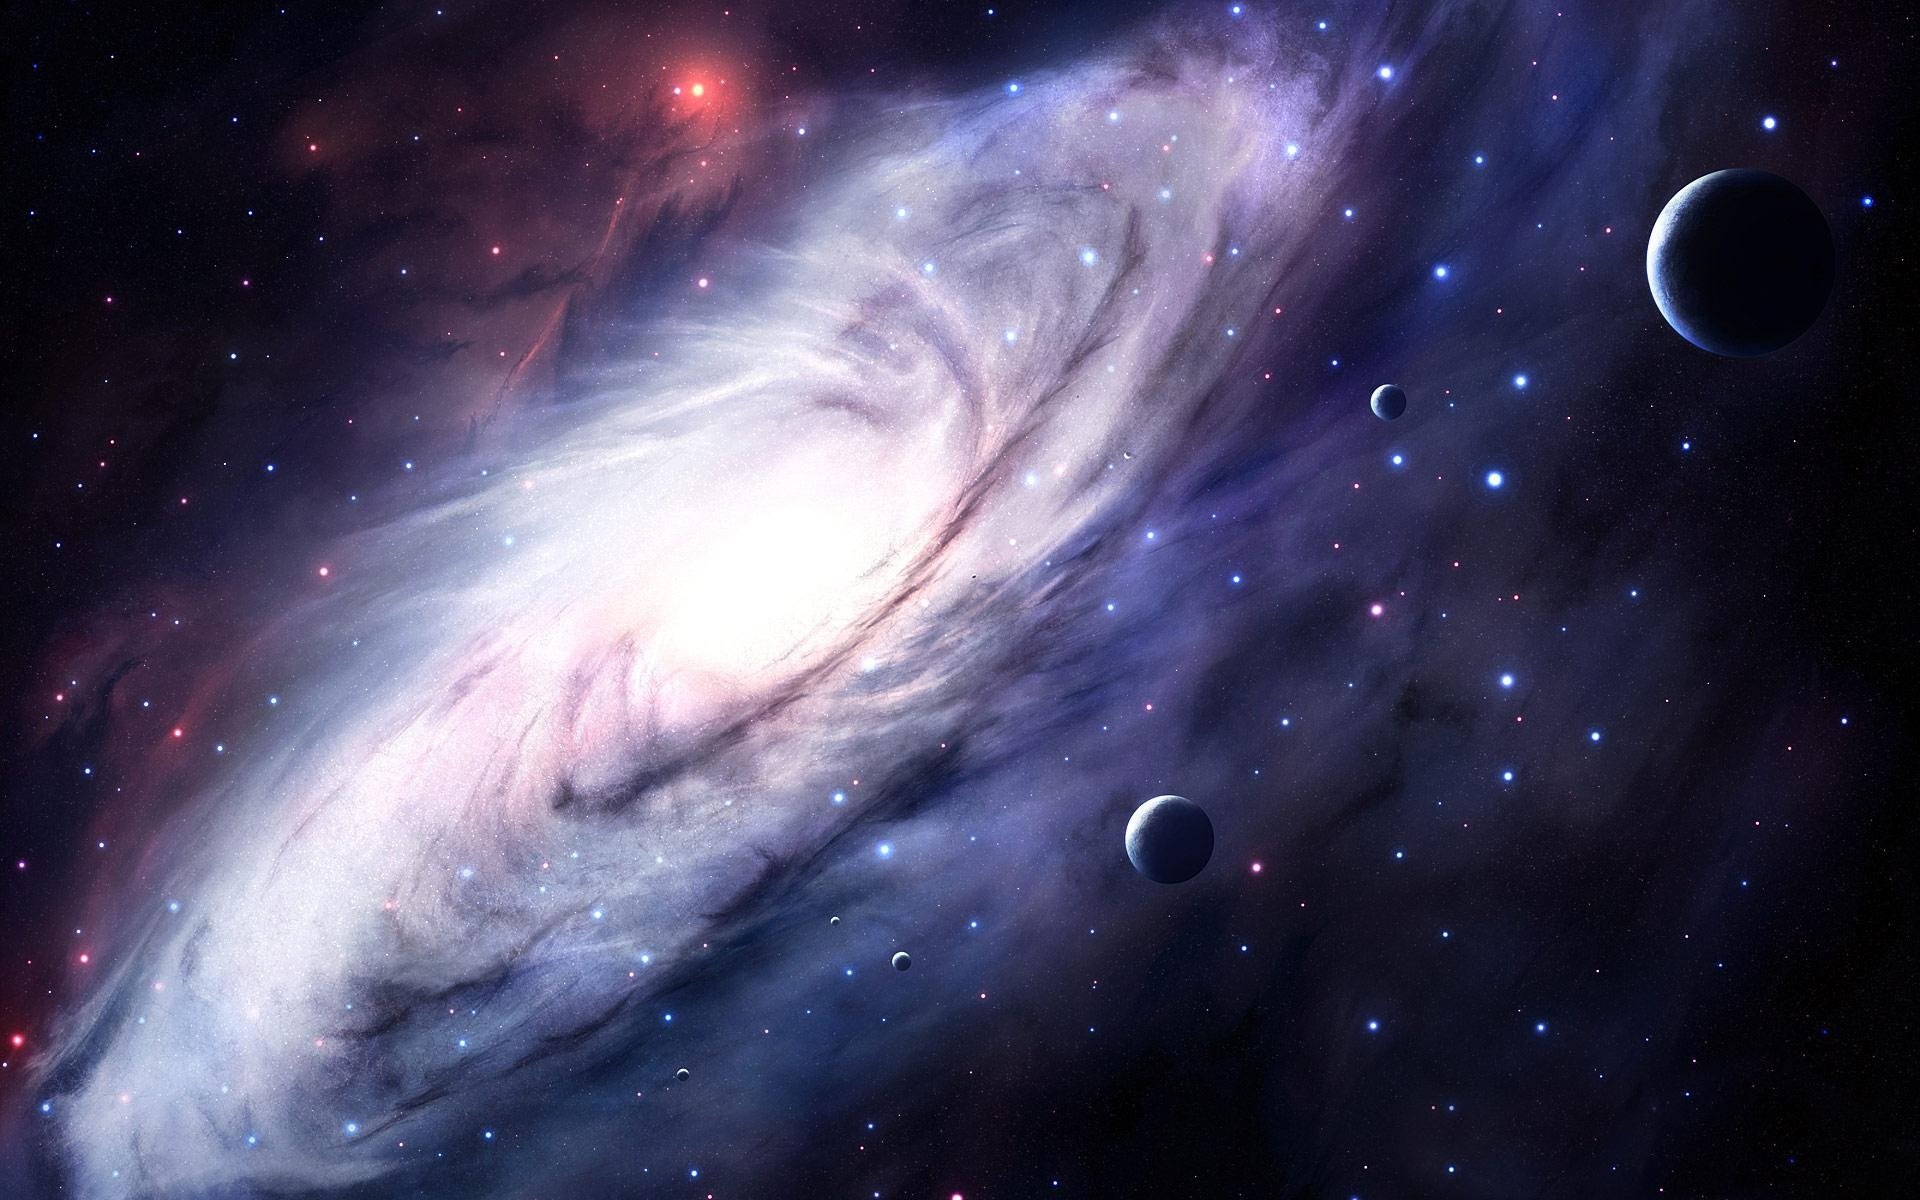 Thiên hà khoa học viễn tưởng - Hòa mình vào thiên hà khoa học viễn tưởng qua bức ảnh. Bạn sẽ khám phá những kiểu dáng và màu sắc độc đáo của những hành tinh, sao chổi, ngôi sao và các vật thể vô cùng kỳ lạ.